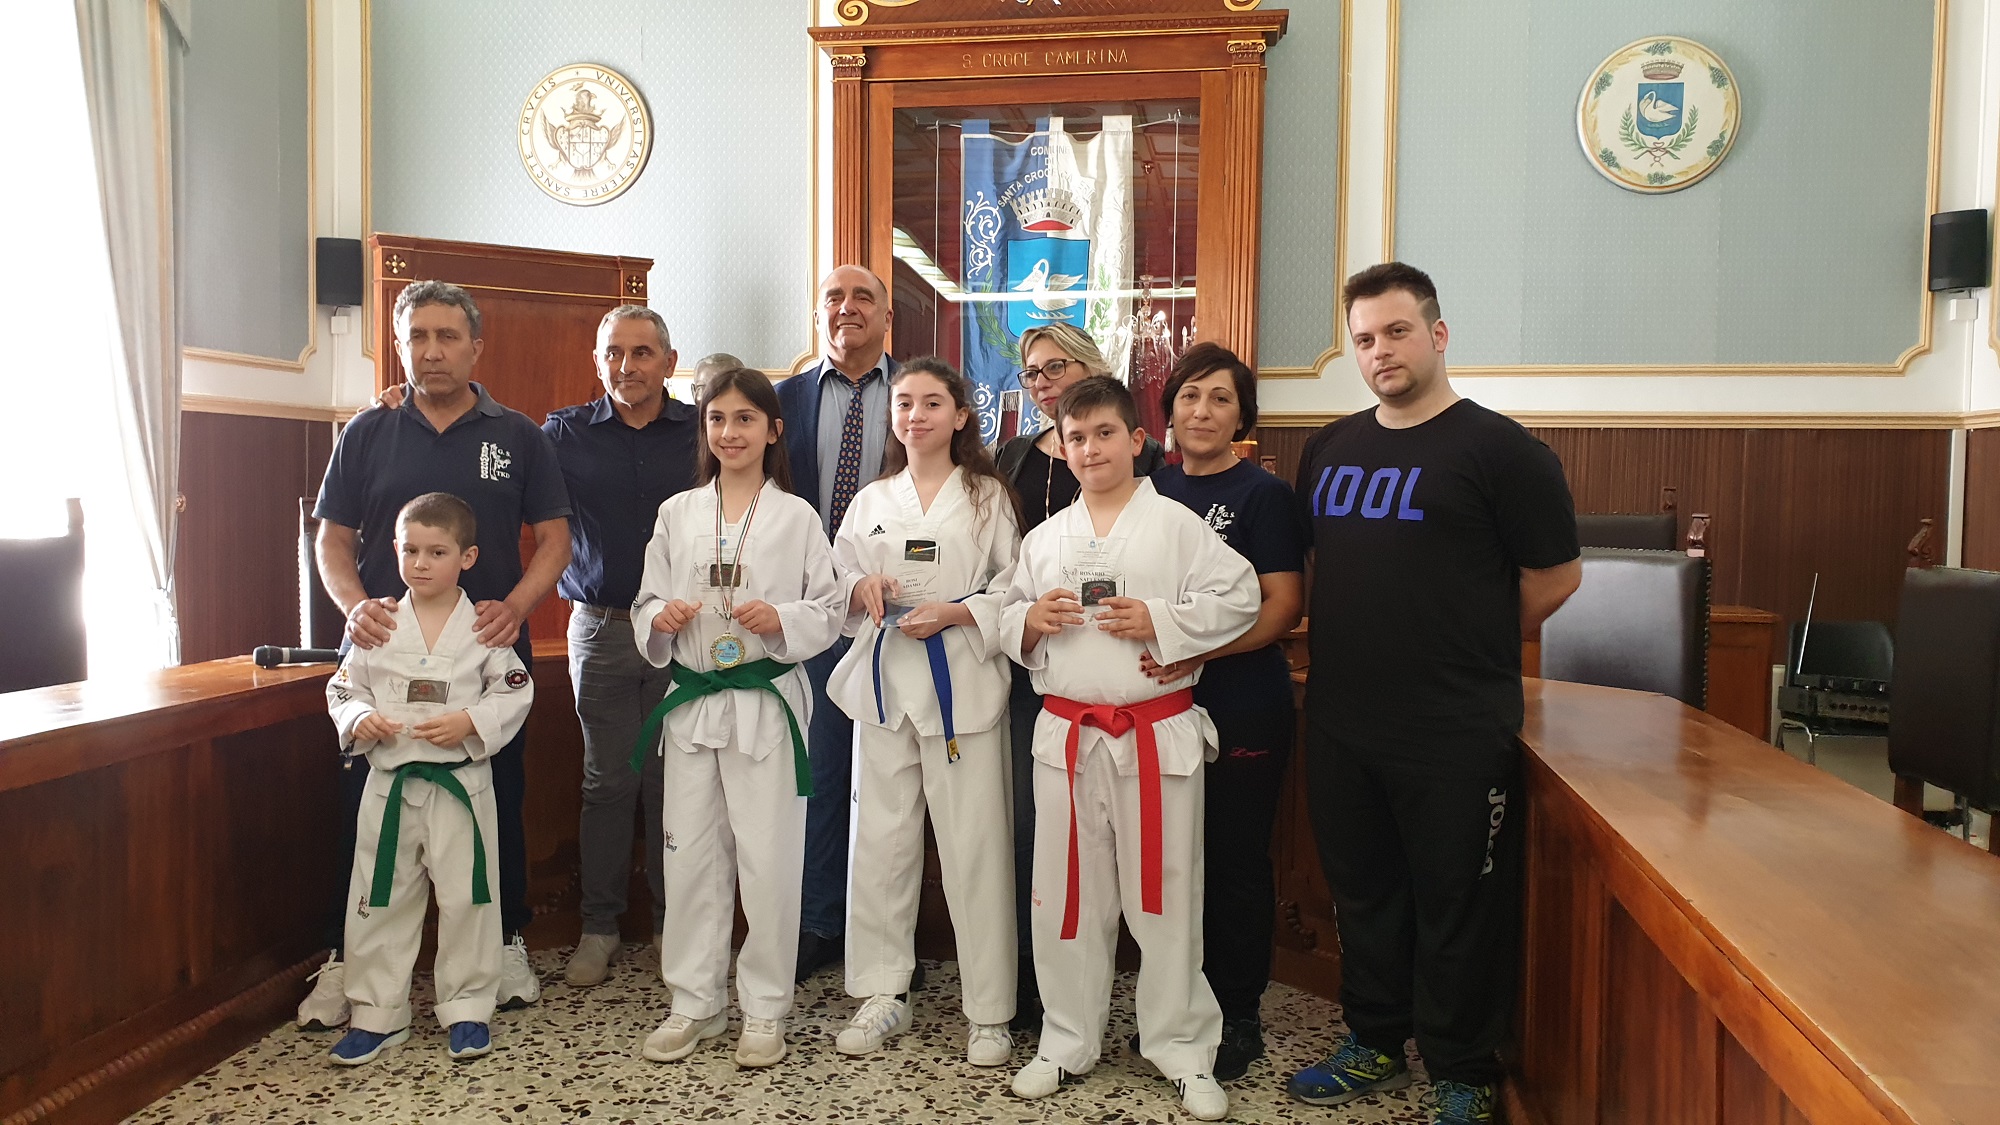  Gli atleti della G.S. Taekwondo si prendono i complimenti del sindaco